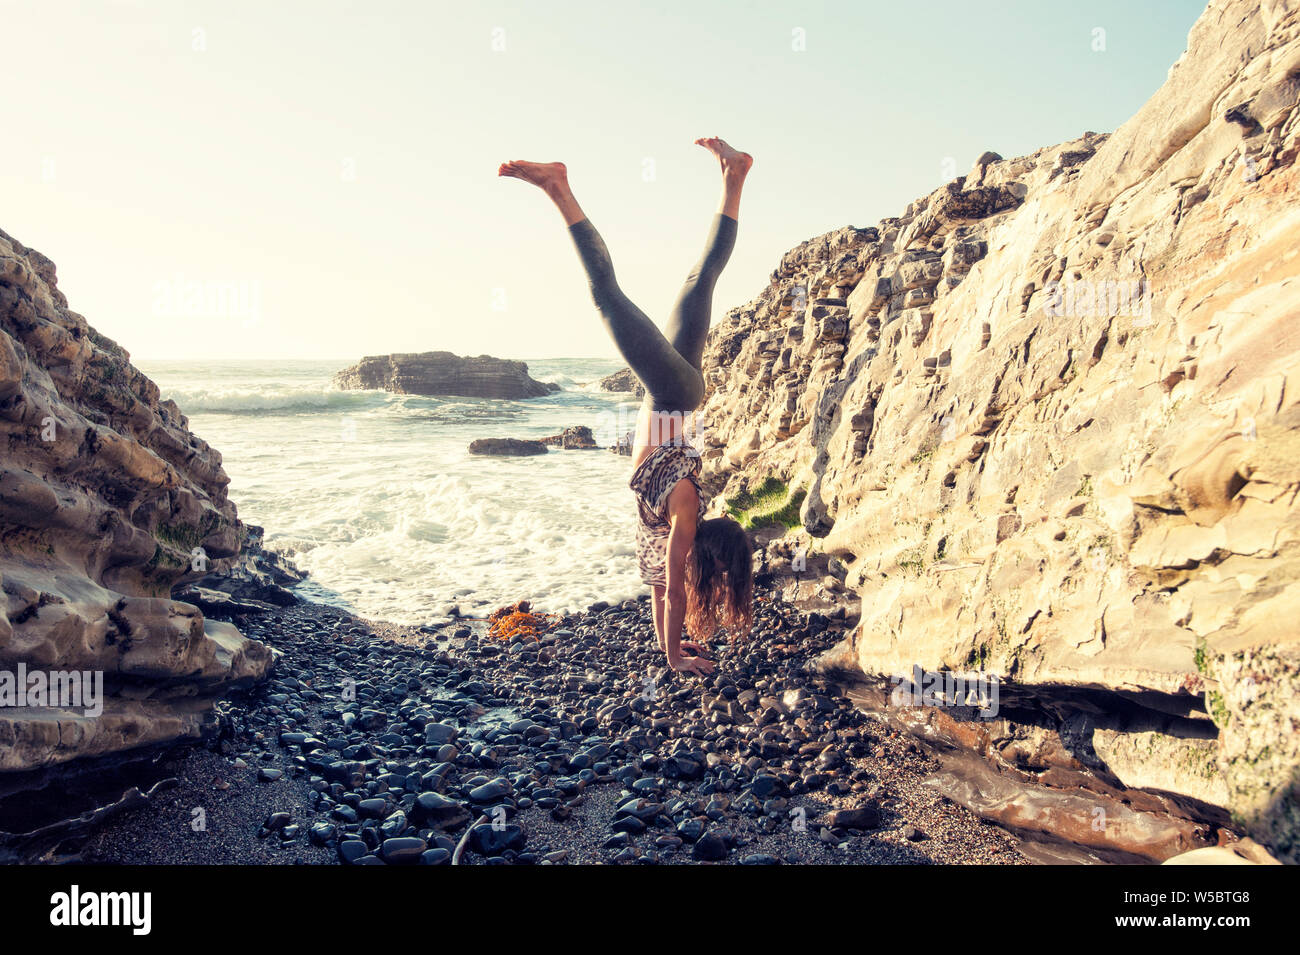 Energie und Vitalität ausdrücken, die durch eine junge passende Frau auf einem wilden und felsigen Strand. Stockfoto